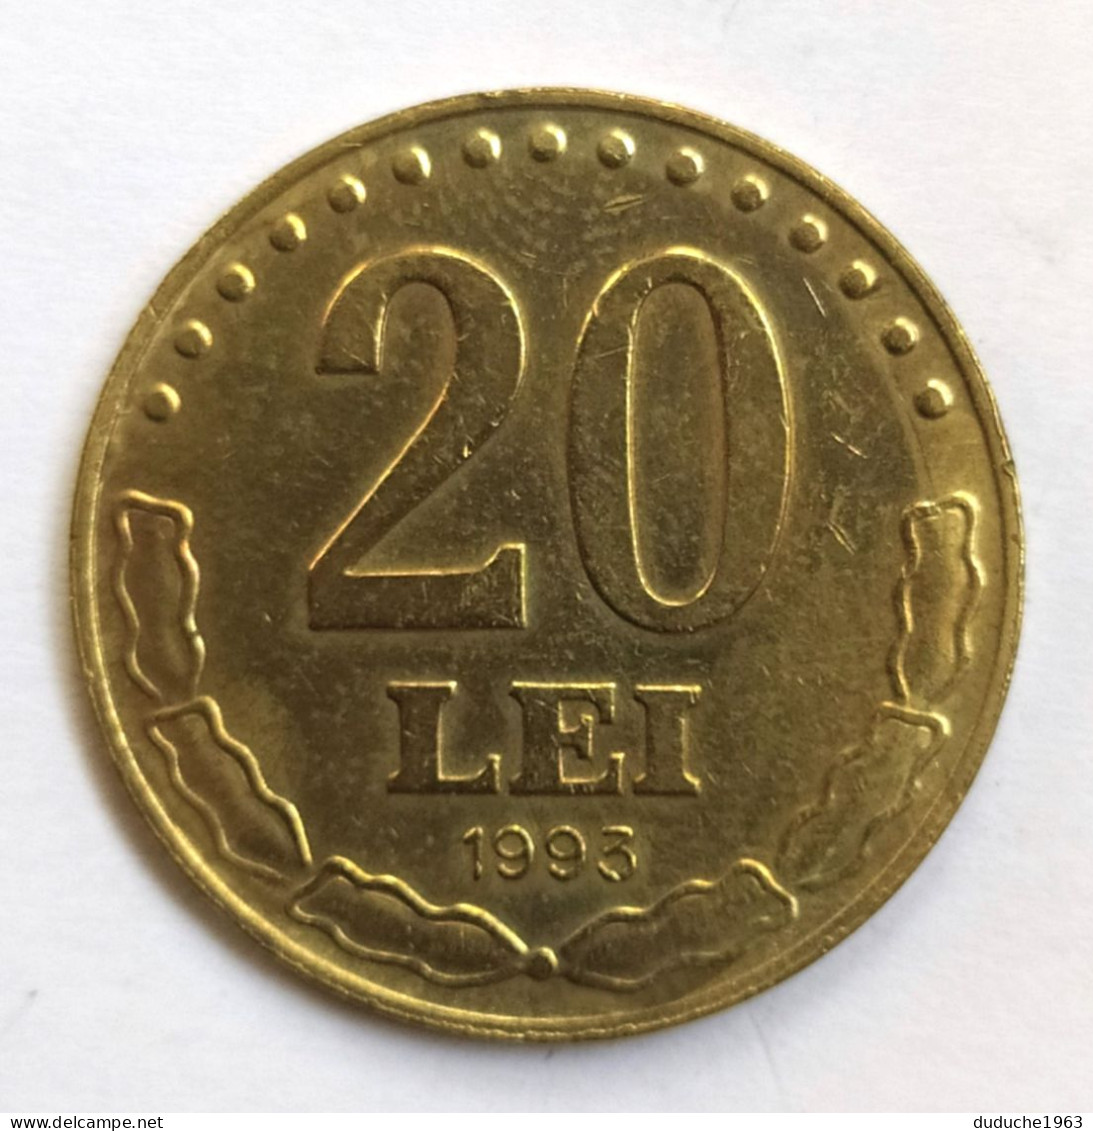 Roumanie - 20 Lei 1993 - Rumania